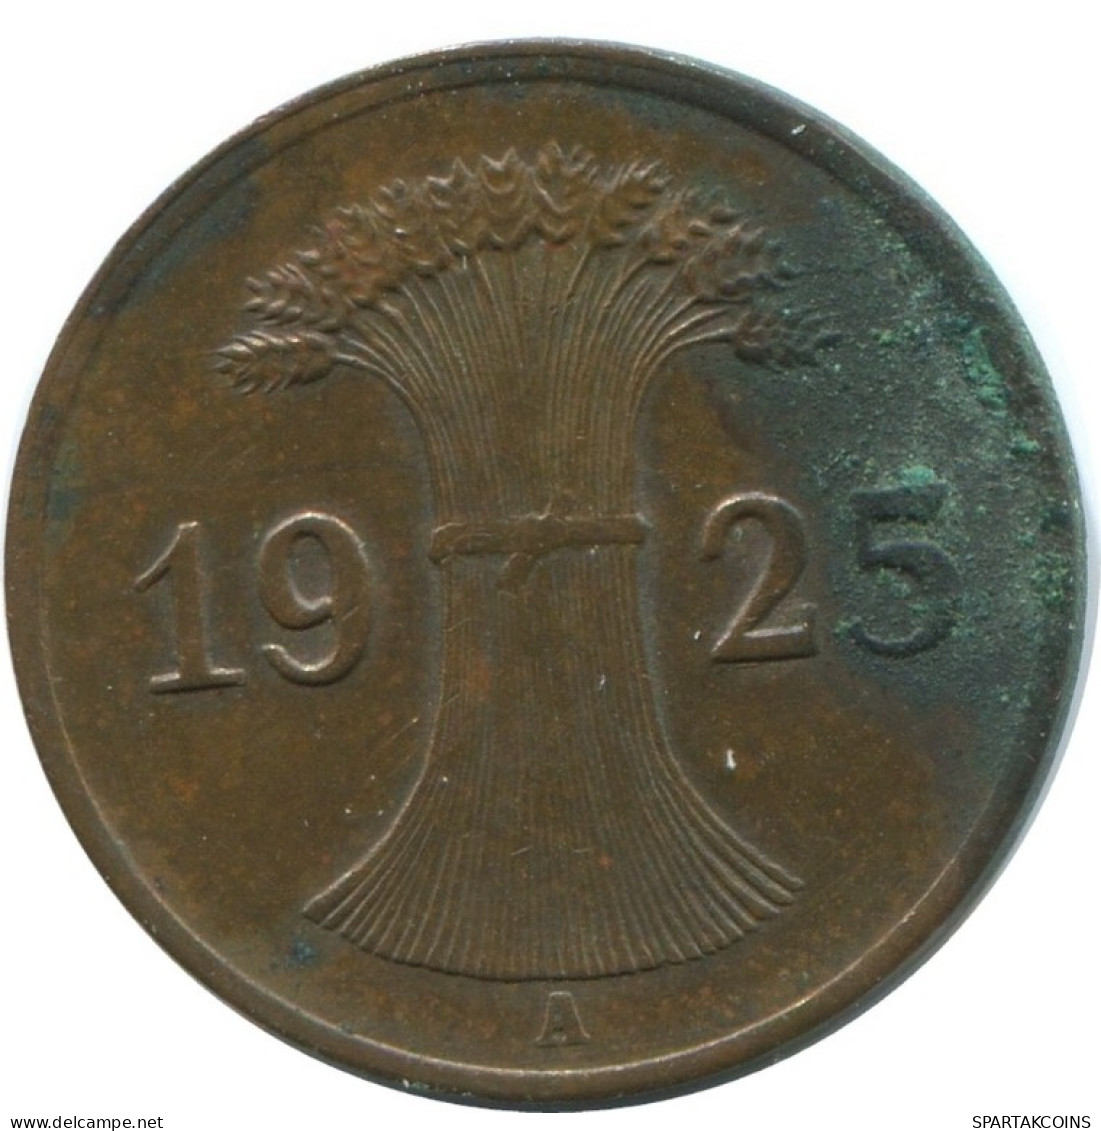 1 REICHSPFENNIG 1925 A DEUTSCHLAND Münze GERMANY #AD456.9.D.A - 1 Rentenpfennig & 1 Reichspfennig